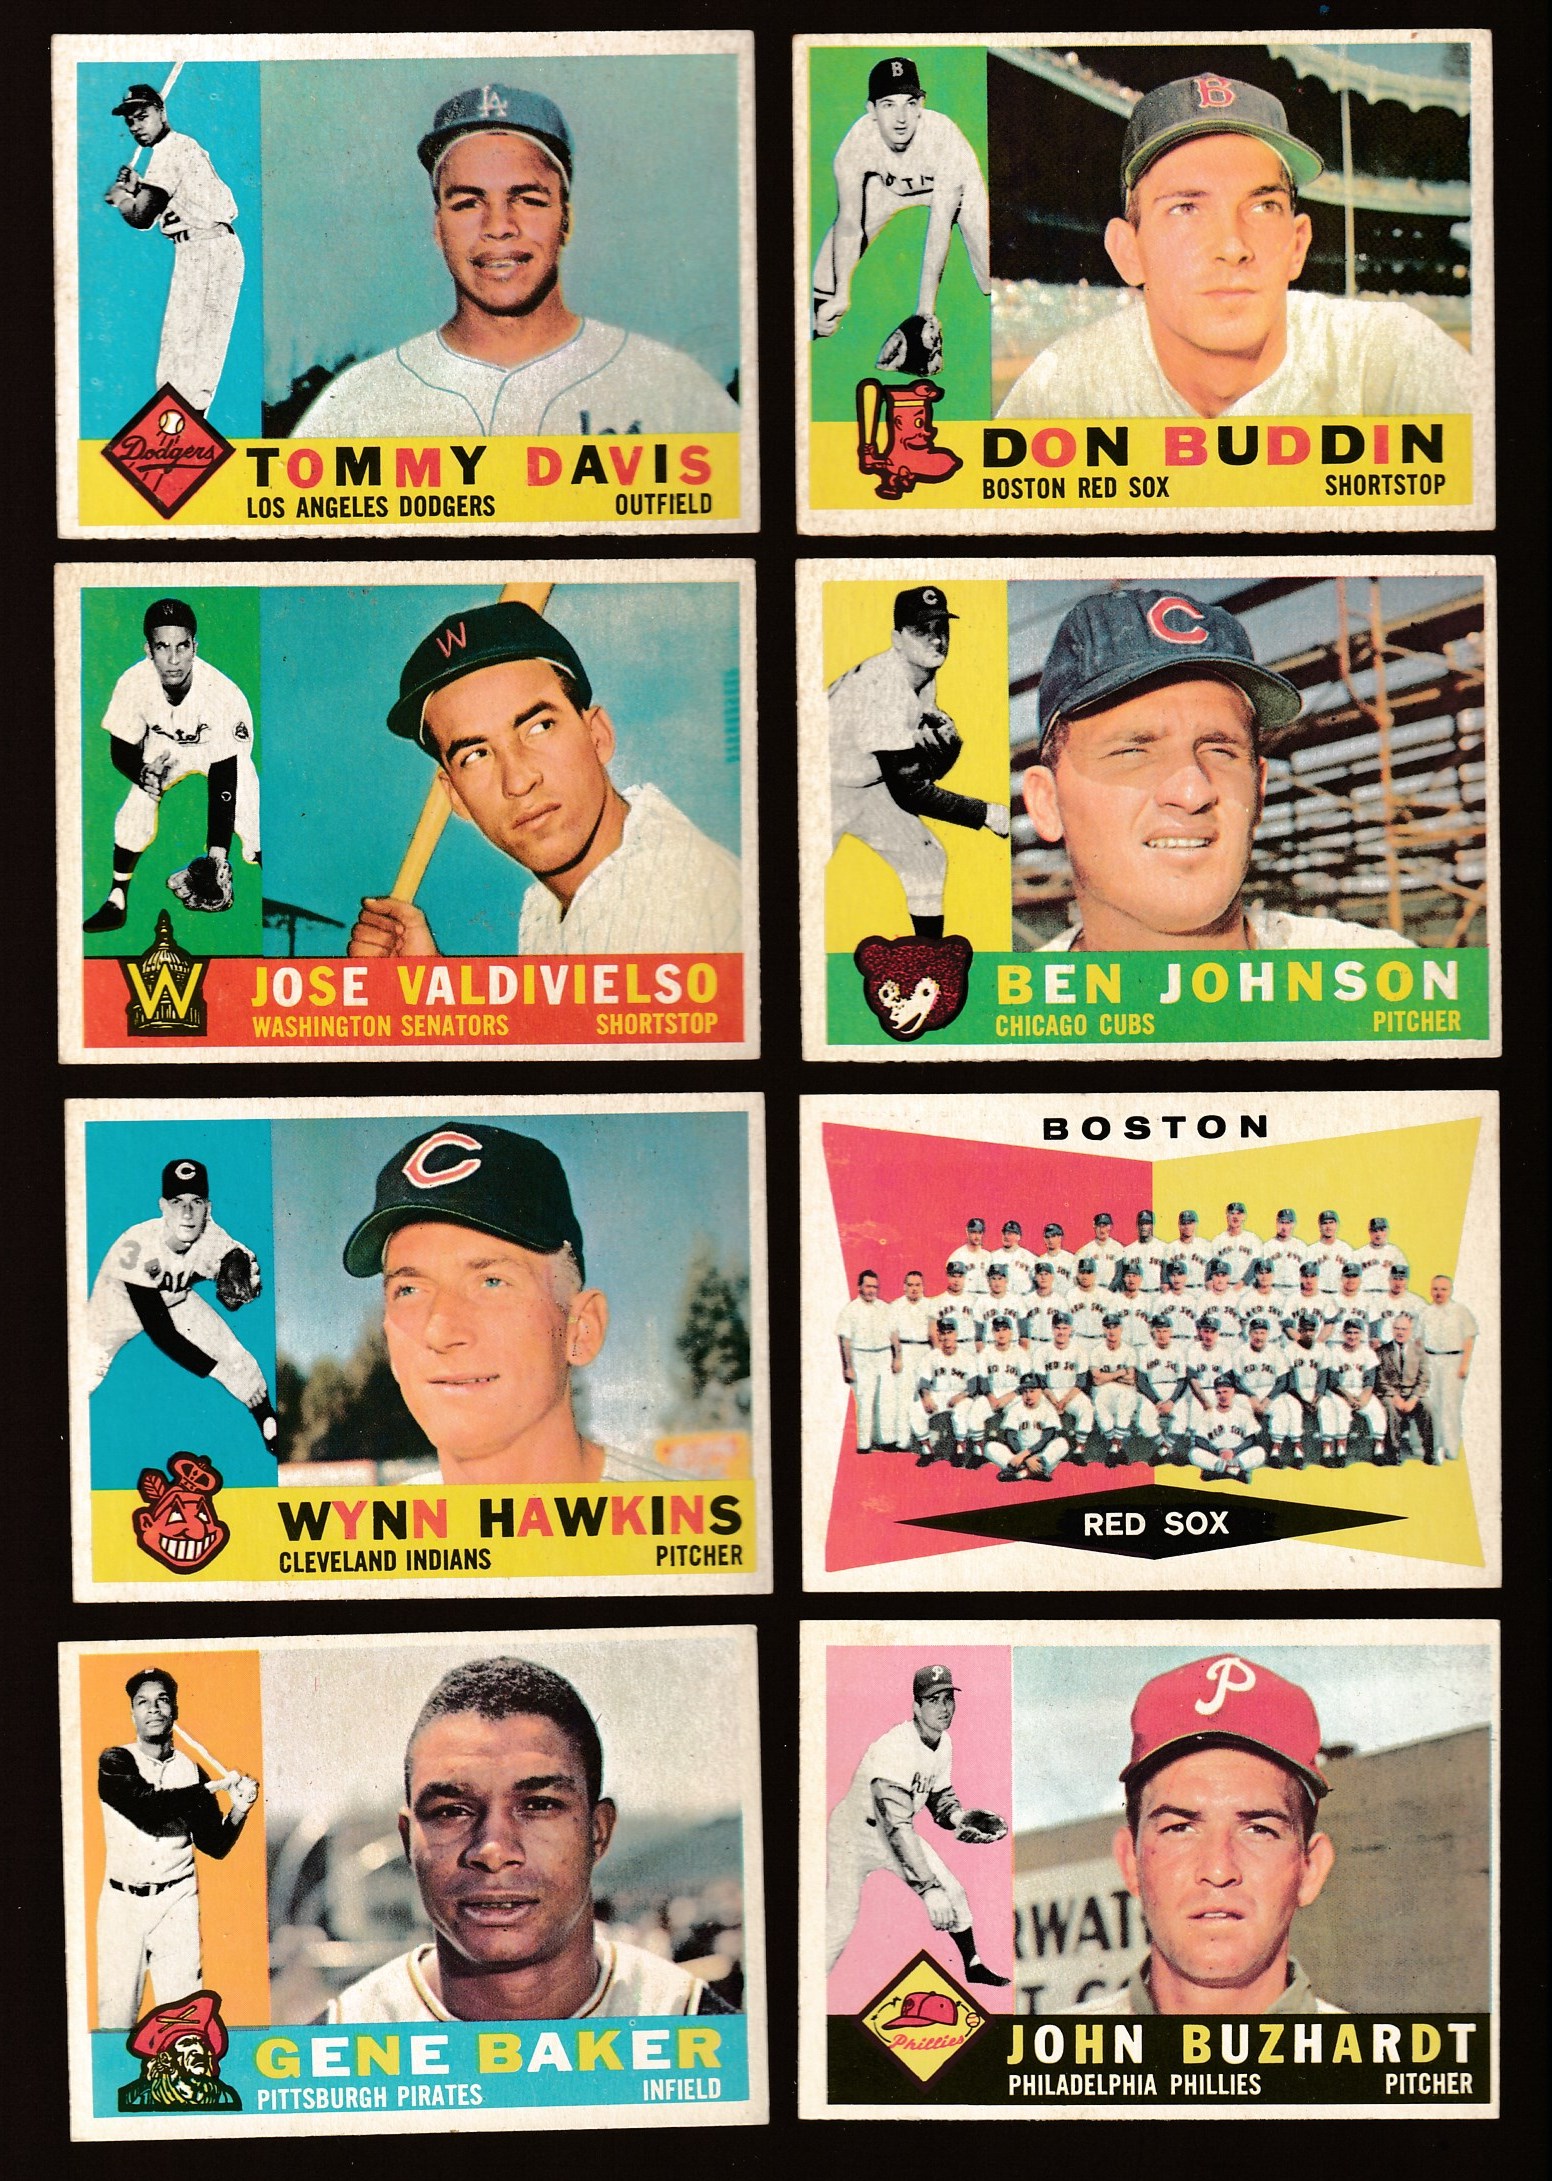 1960 Topps #539 Gene Baker SCARCE HIGH NUMBER [#j] (Pirates) Baseball cards value